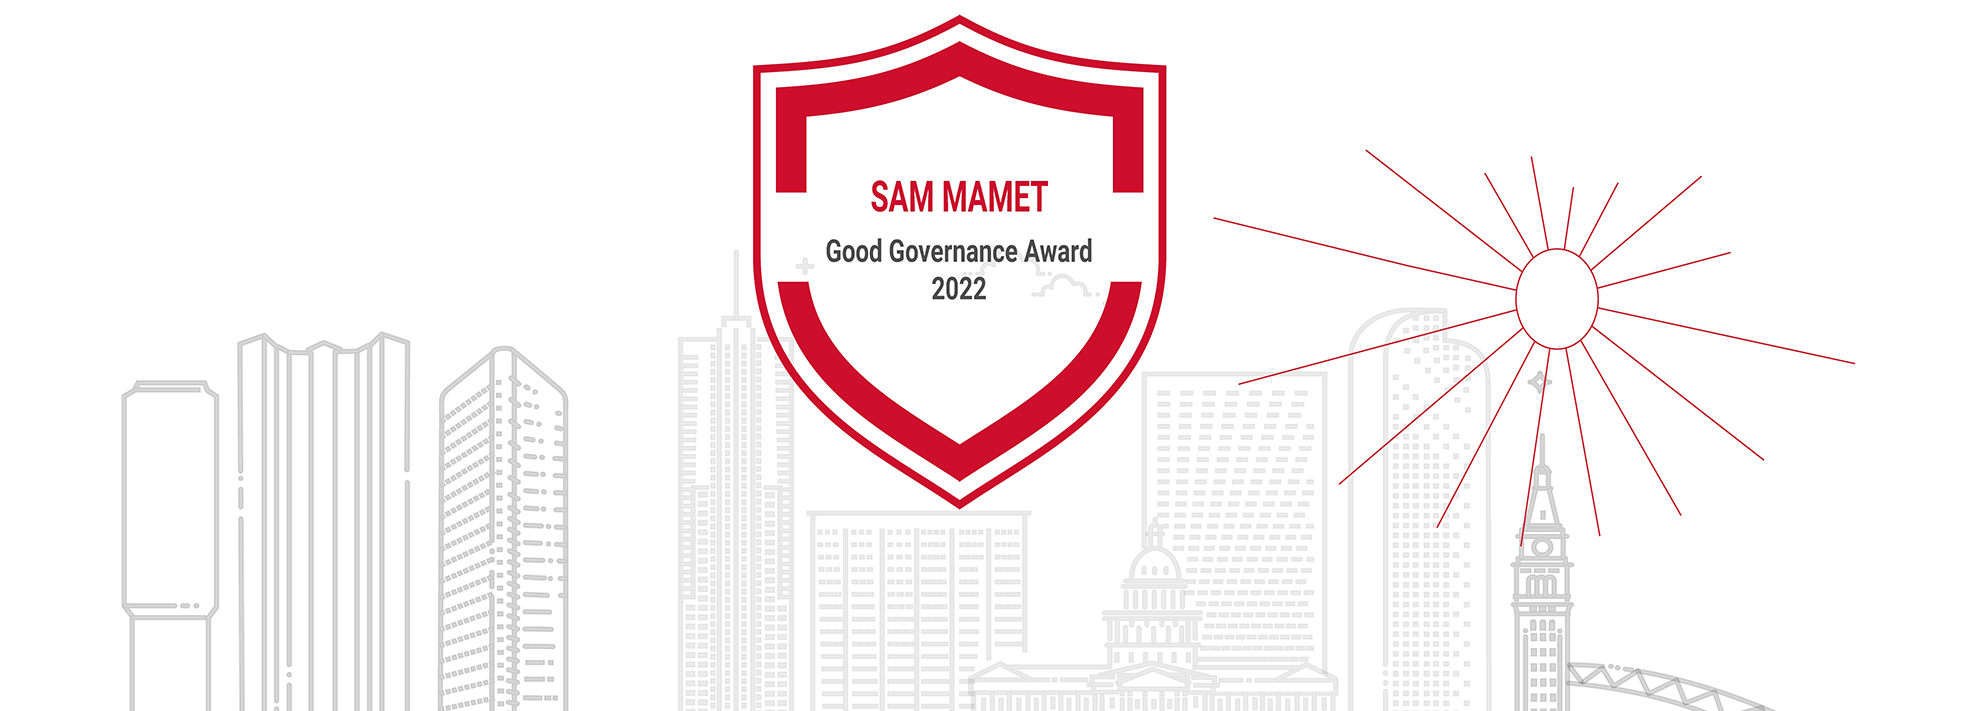 Sam Mamet Good Governance Award